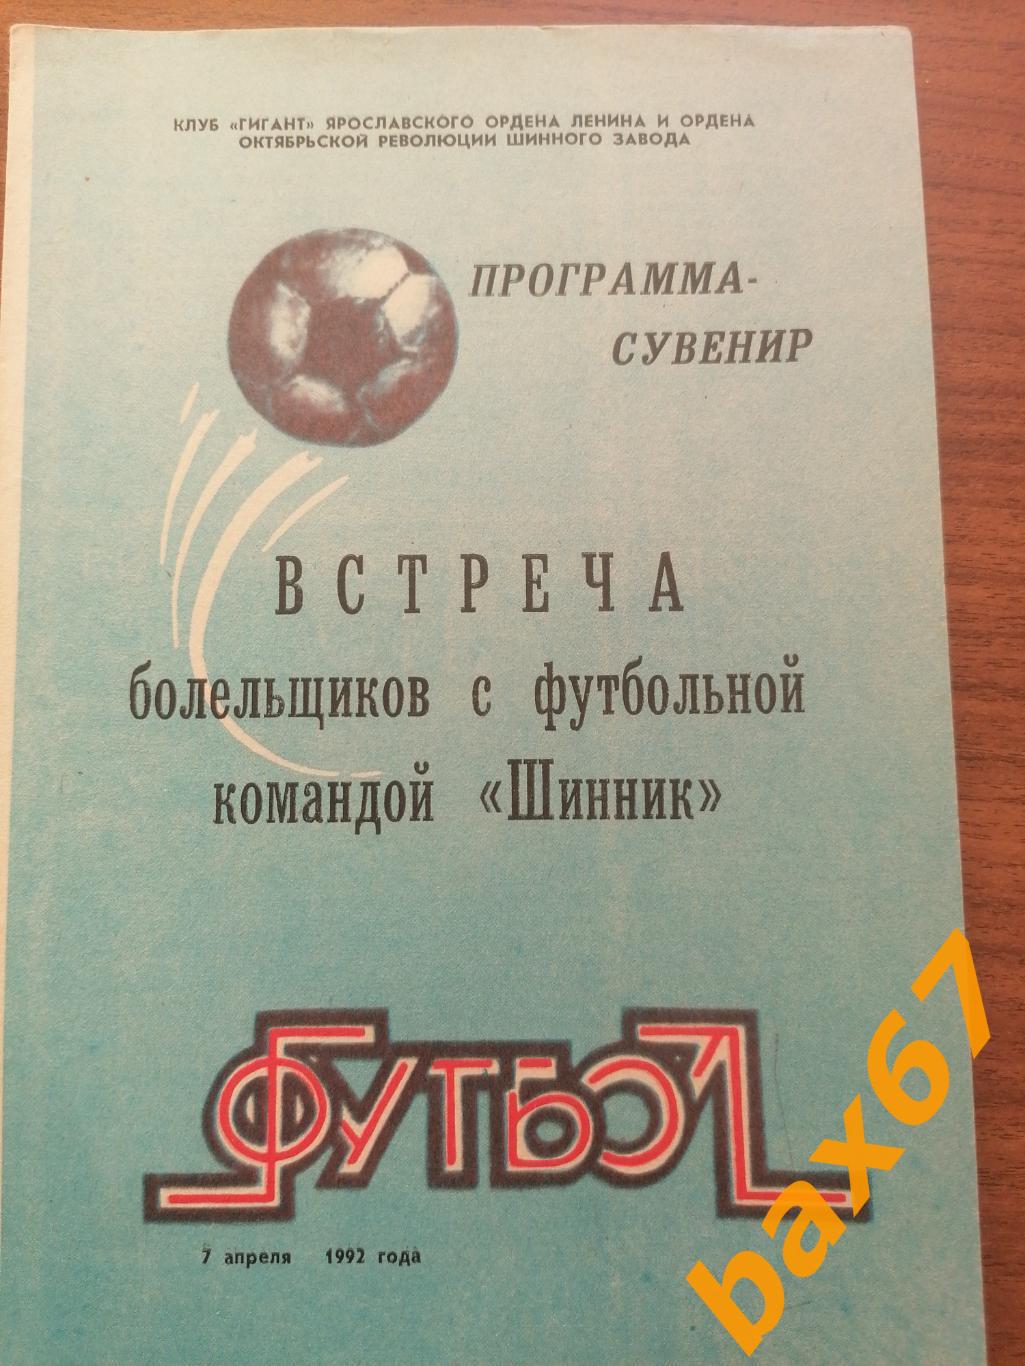 Программка - Сувенир. Шинник Ярославль 07.04.1992